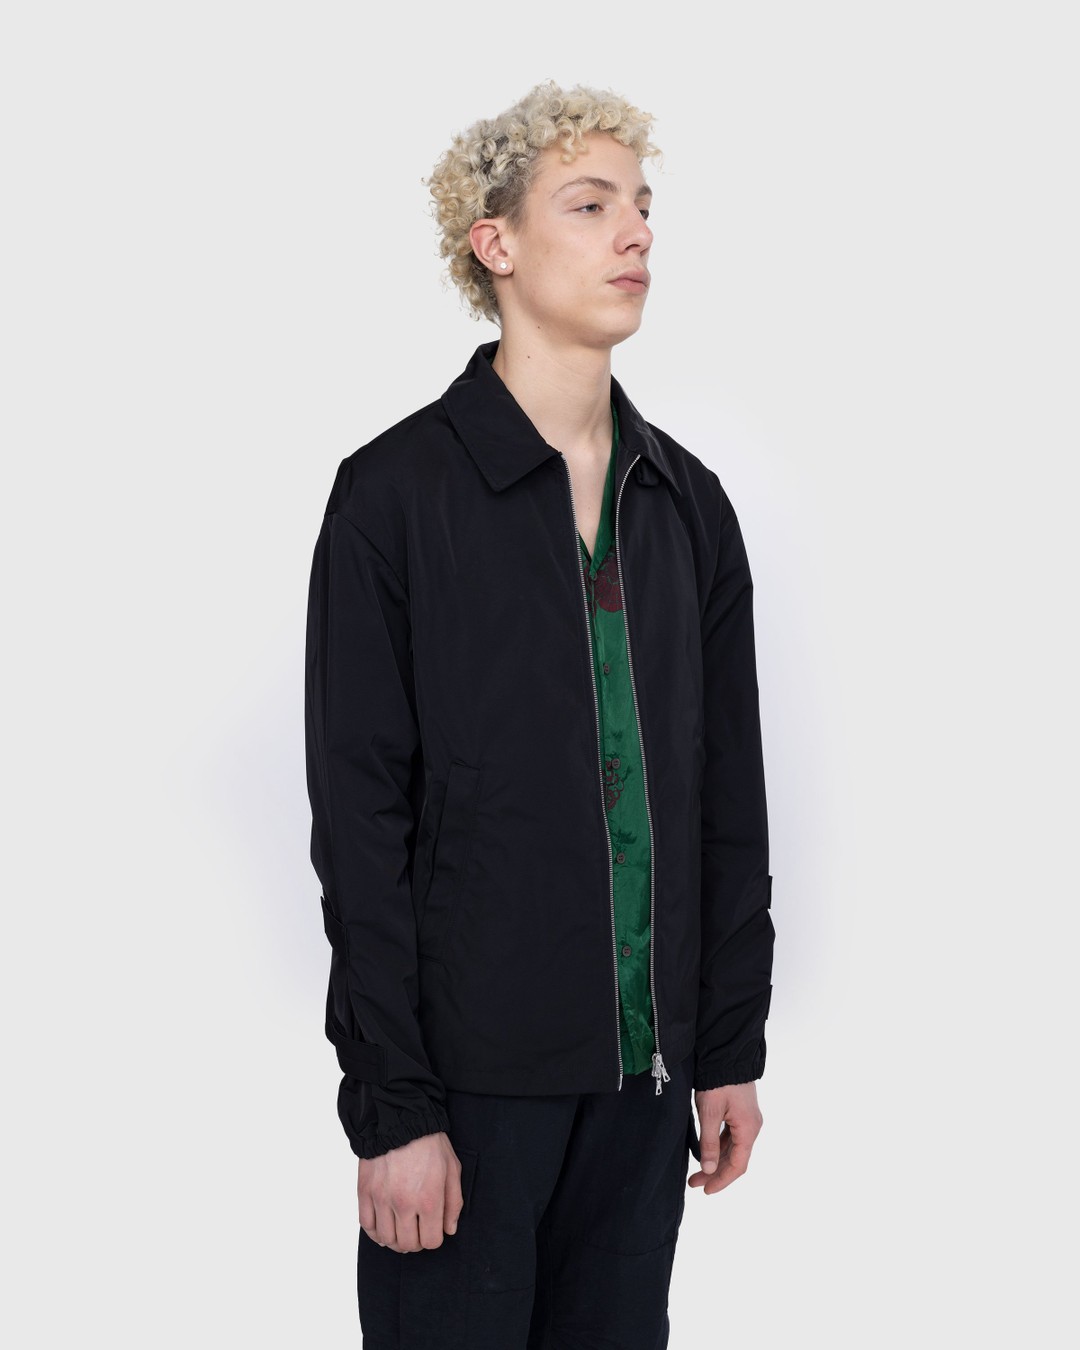 Dries van Noten – Vona Jacket Black - Outerwear - Black - Image 4